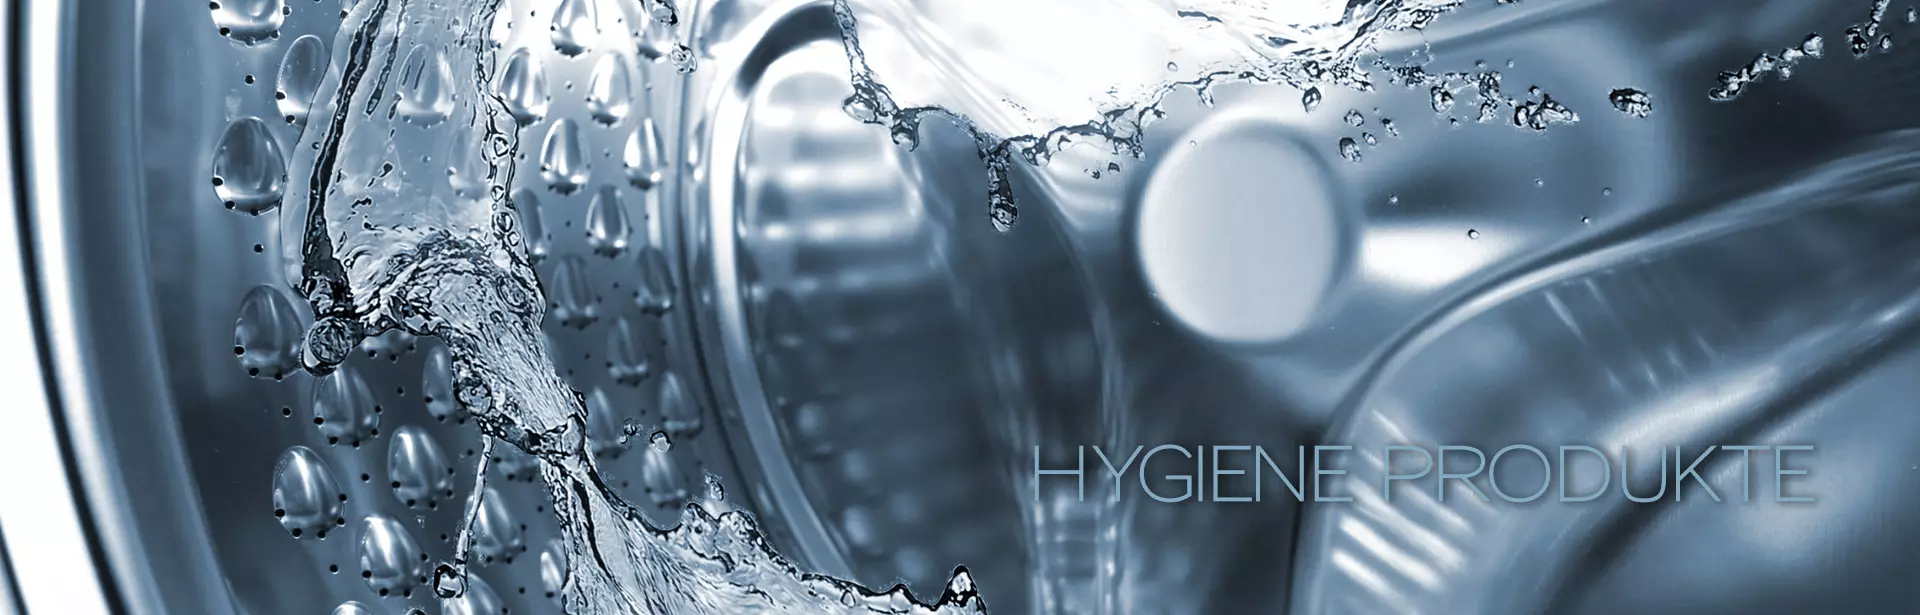 Hygiene Produkte in Industrie und Gewerbe